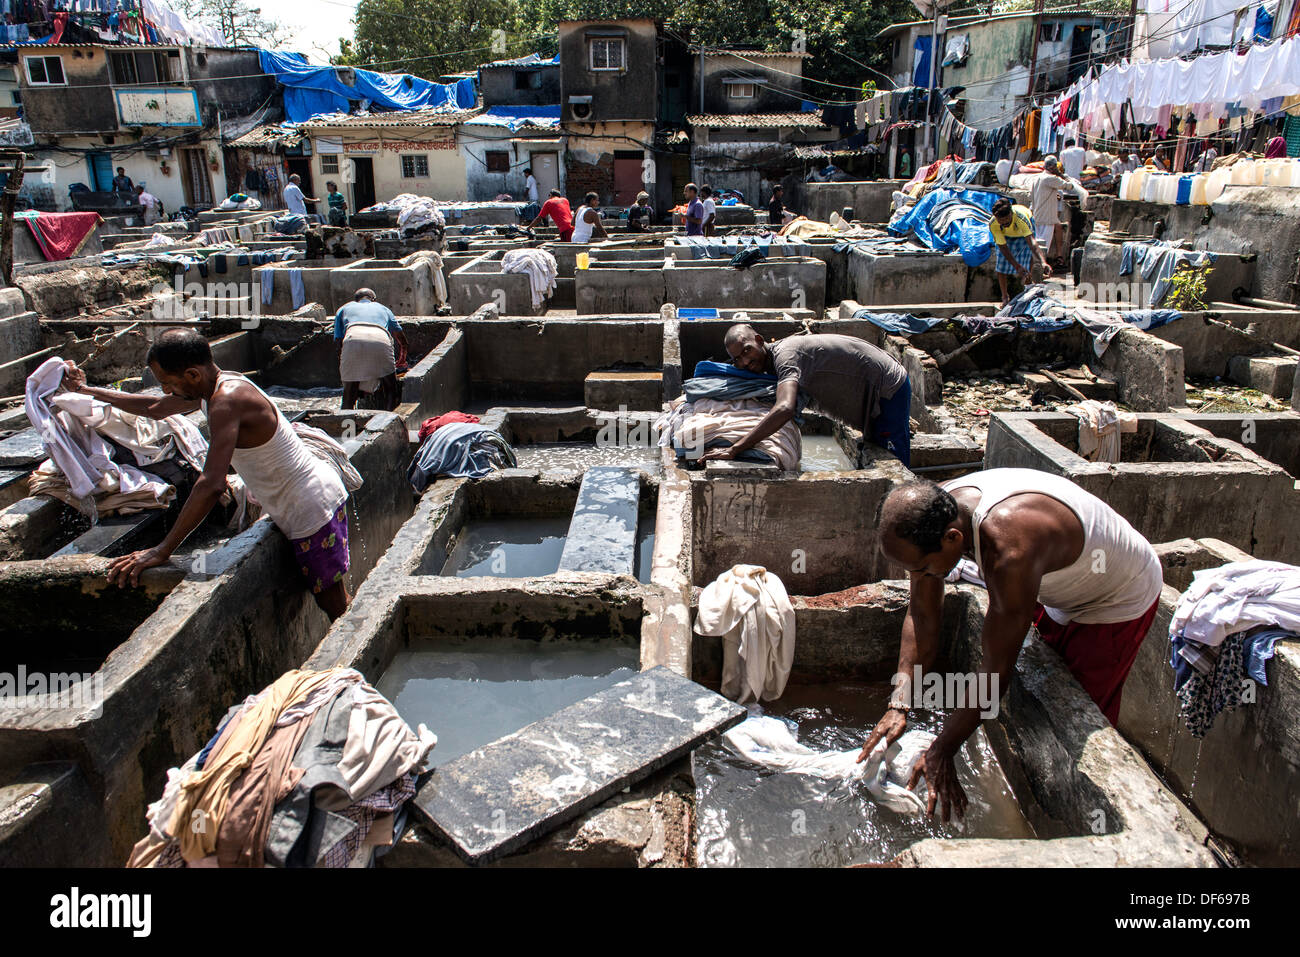 Les hommes indiens laver les vêtements à Mahalaxmi Dhobi Ghat ou laverie Mumbai Inde Banque D'Images